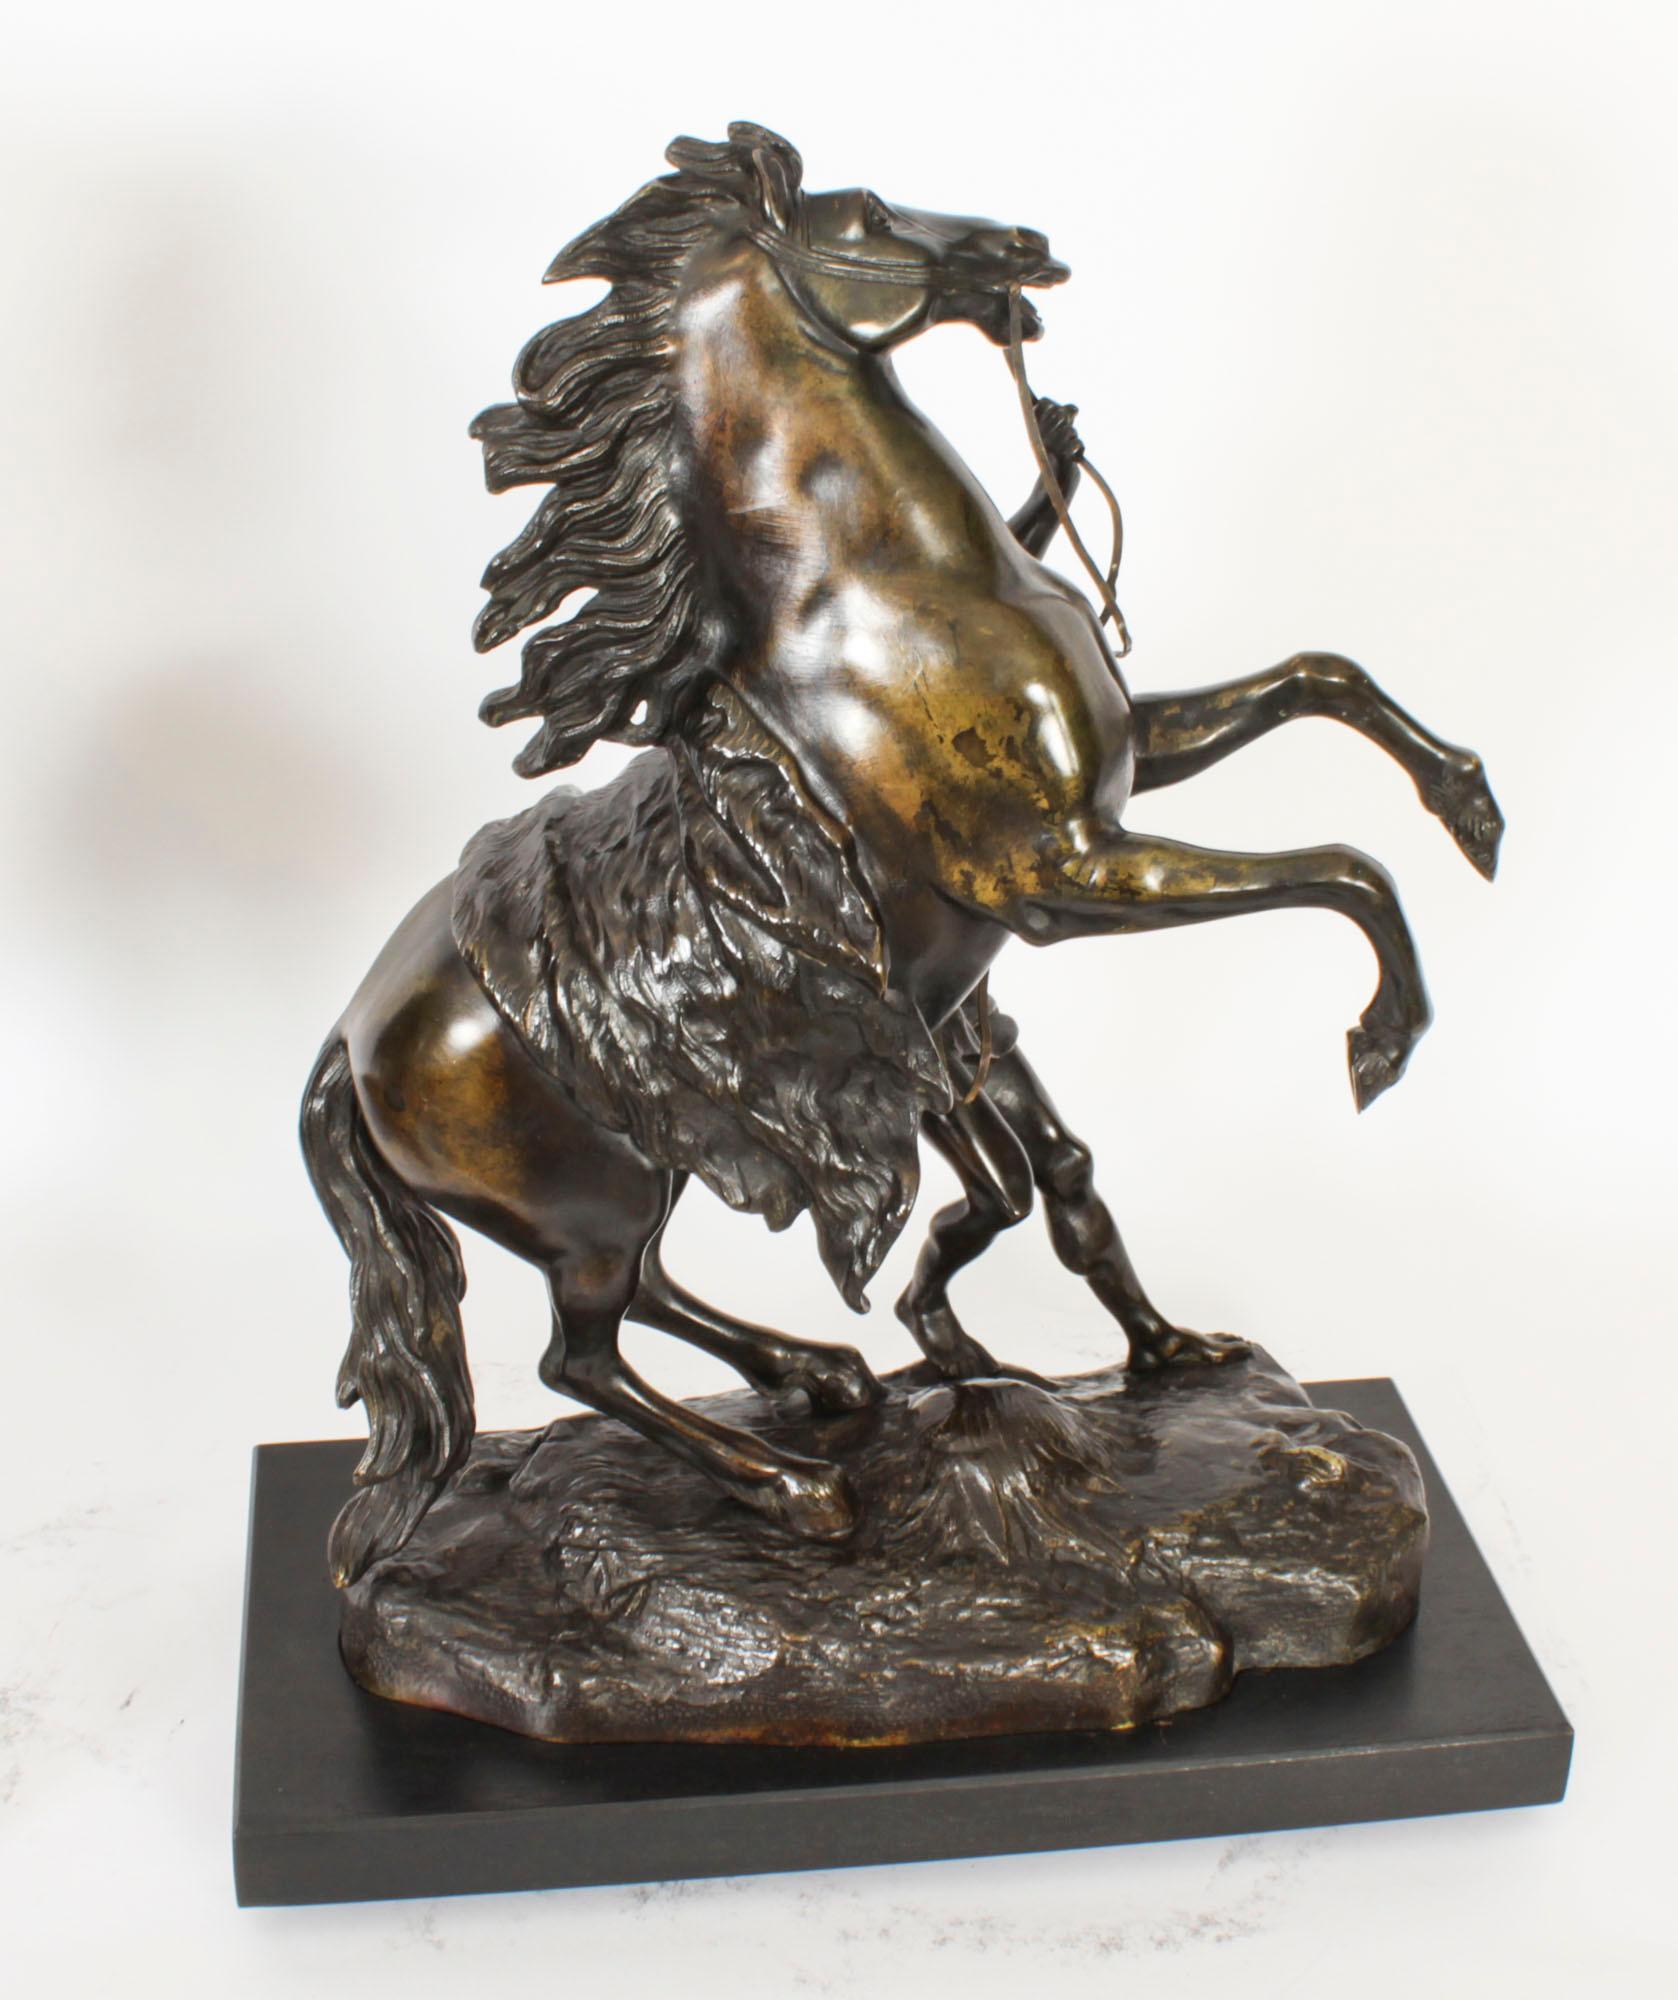 Il s'agit d'une paire de sculptures anciennes en bronze patiné du Grand Tour français représentant les chevaux de Marli, datant d'environ 1850 et signées sur l'une des bases.
 
Les chevaux de Marli ont été commandés par Louis XV de France. Sculptés